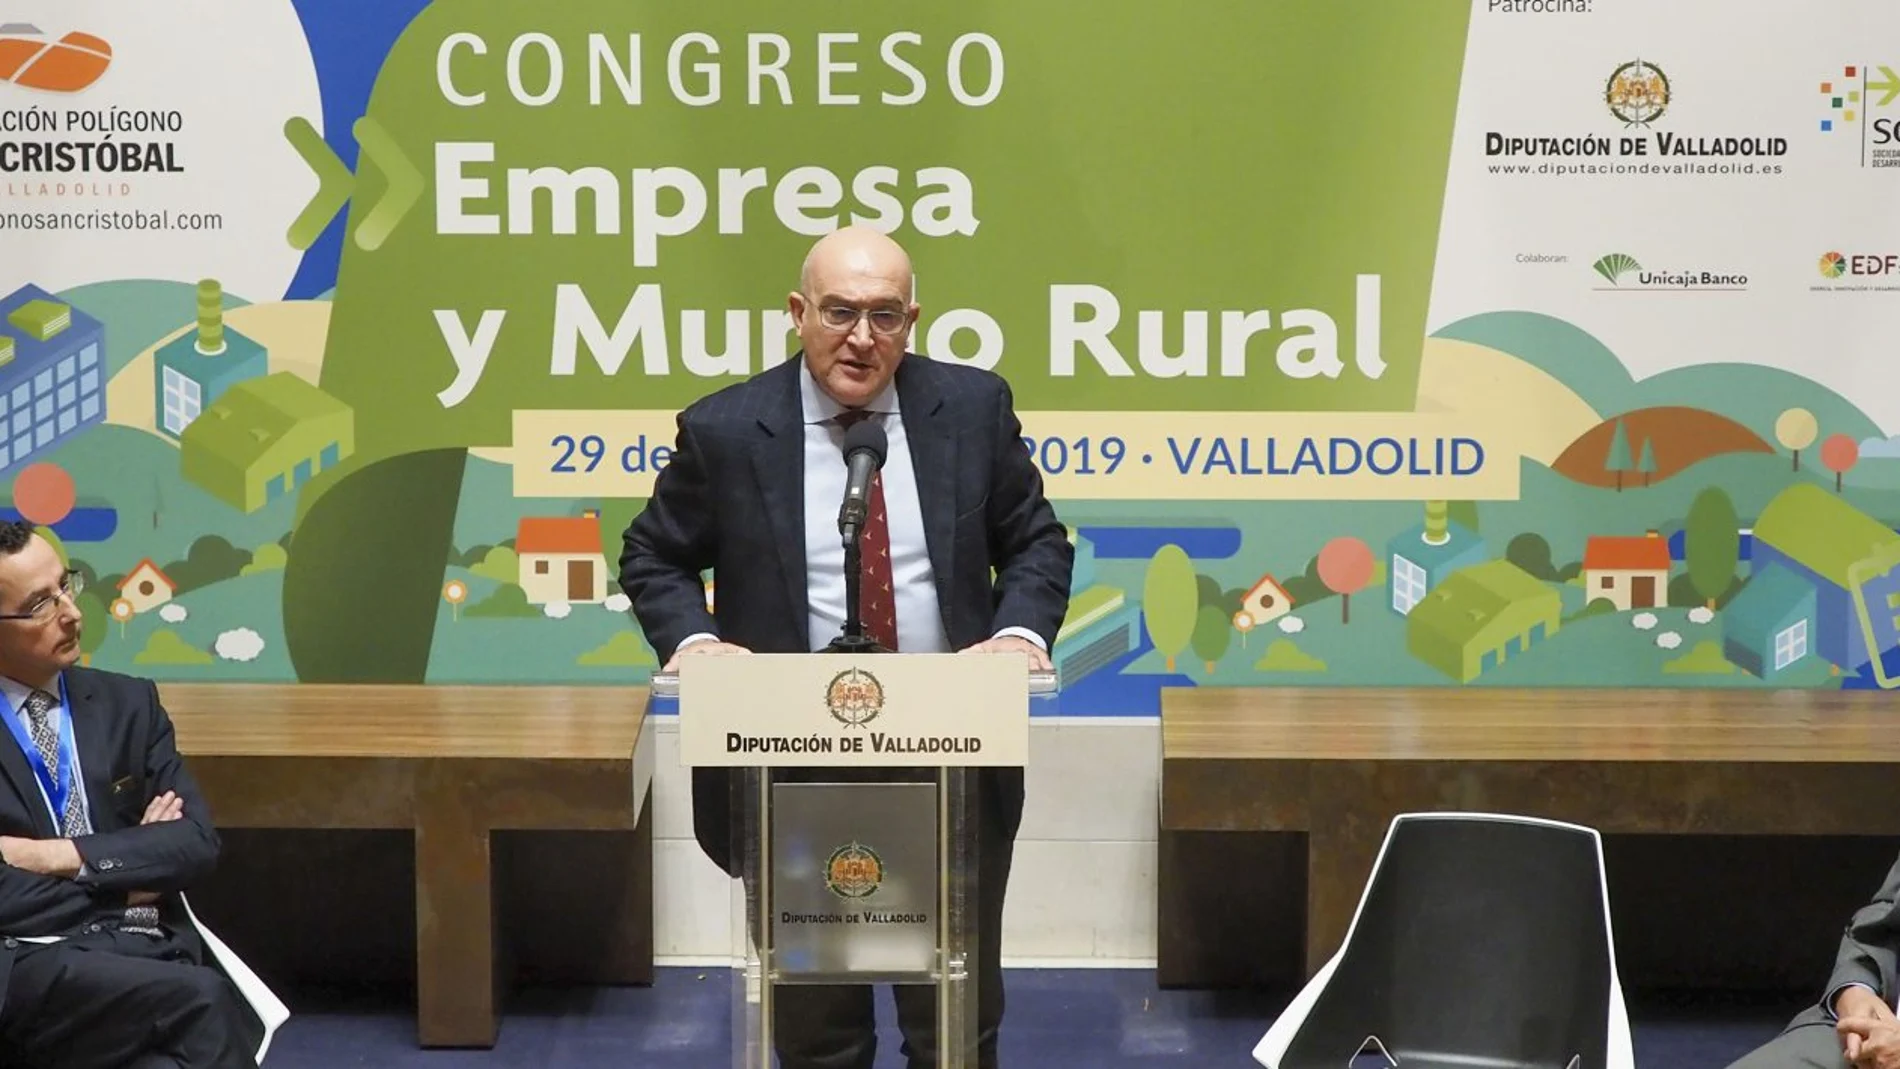 El consejero de Agricultura, Ganadería y Desarrollo Rural, Jesús Julio Carnero, acompañado de Antonio Rodríguez, presidente de la asociación Polígono San Cristobal, inaugura el congreso 'Empresa y Mundo Rural'.